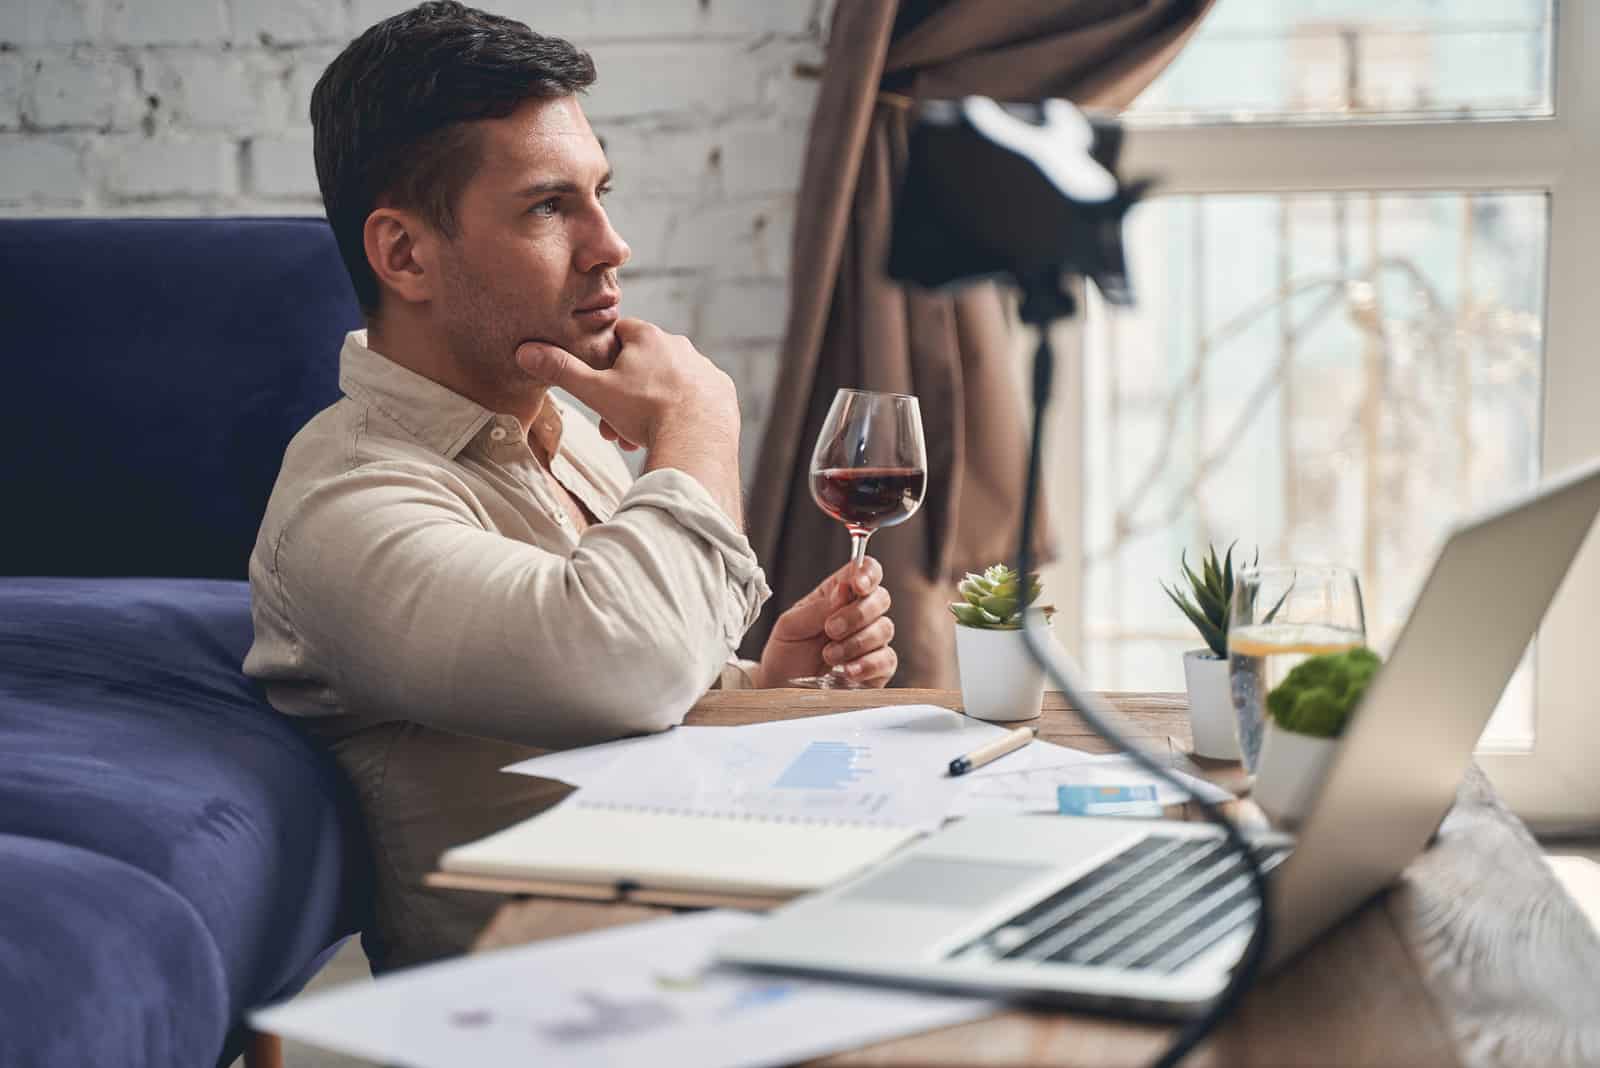 Mann, der eine Pause von der Arbeit macht, während er ein Glas Wein trinkt